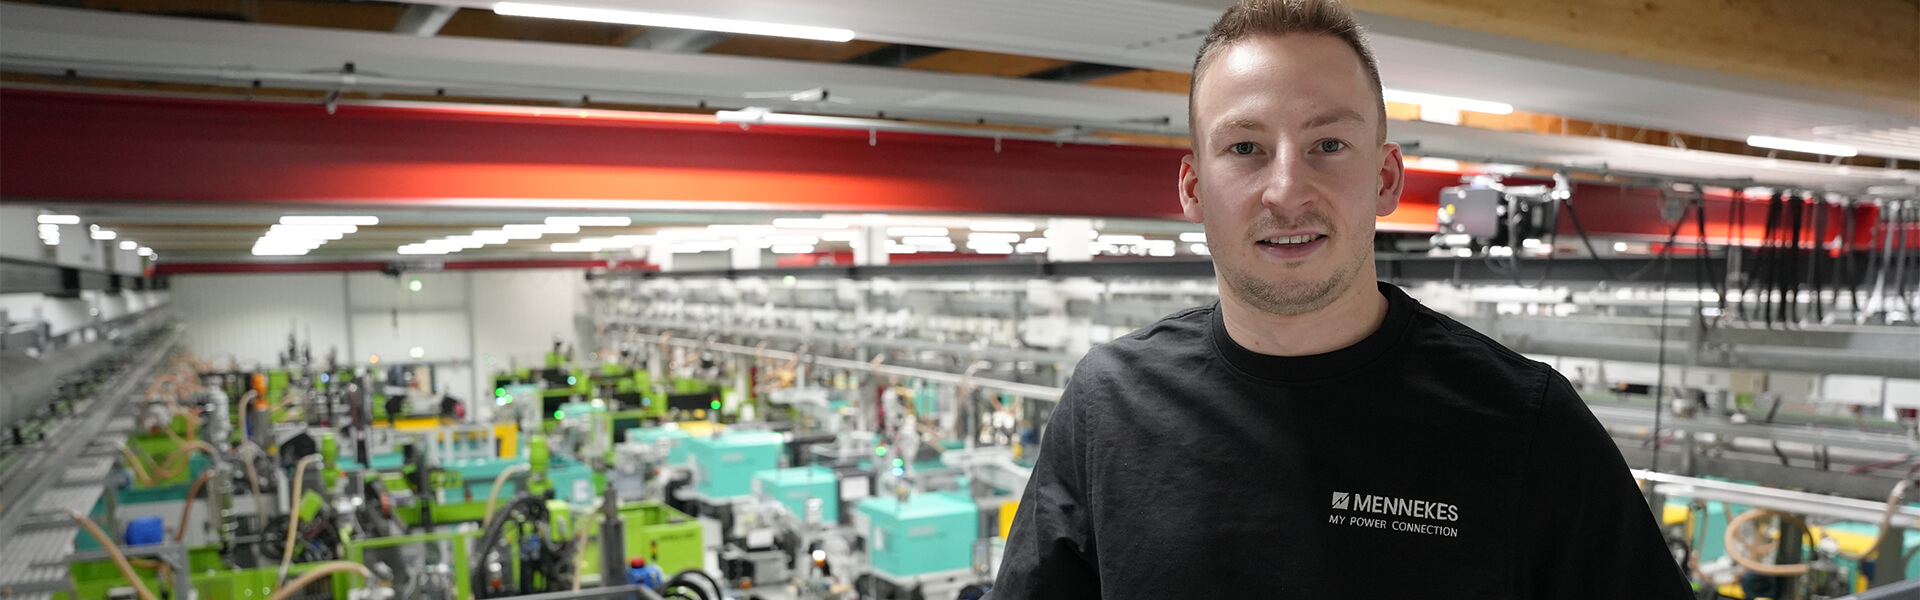 Eine männliche Person im schwarzen Pullover steht auf dem Gelände in einer Produktionshalle und lächelt in die Kamera